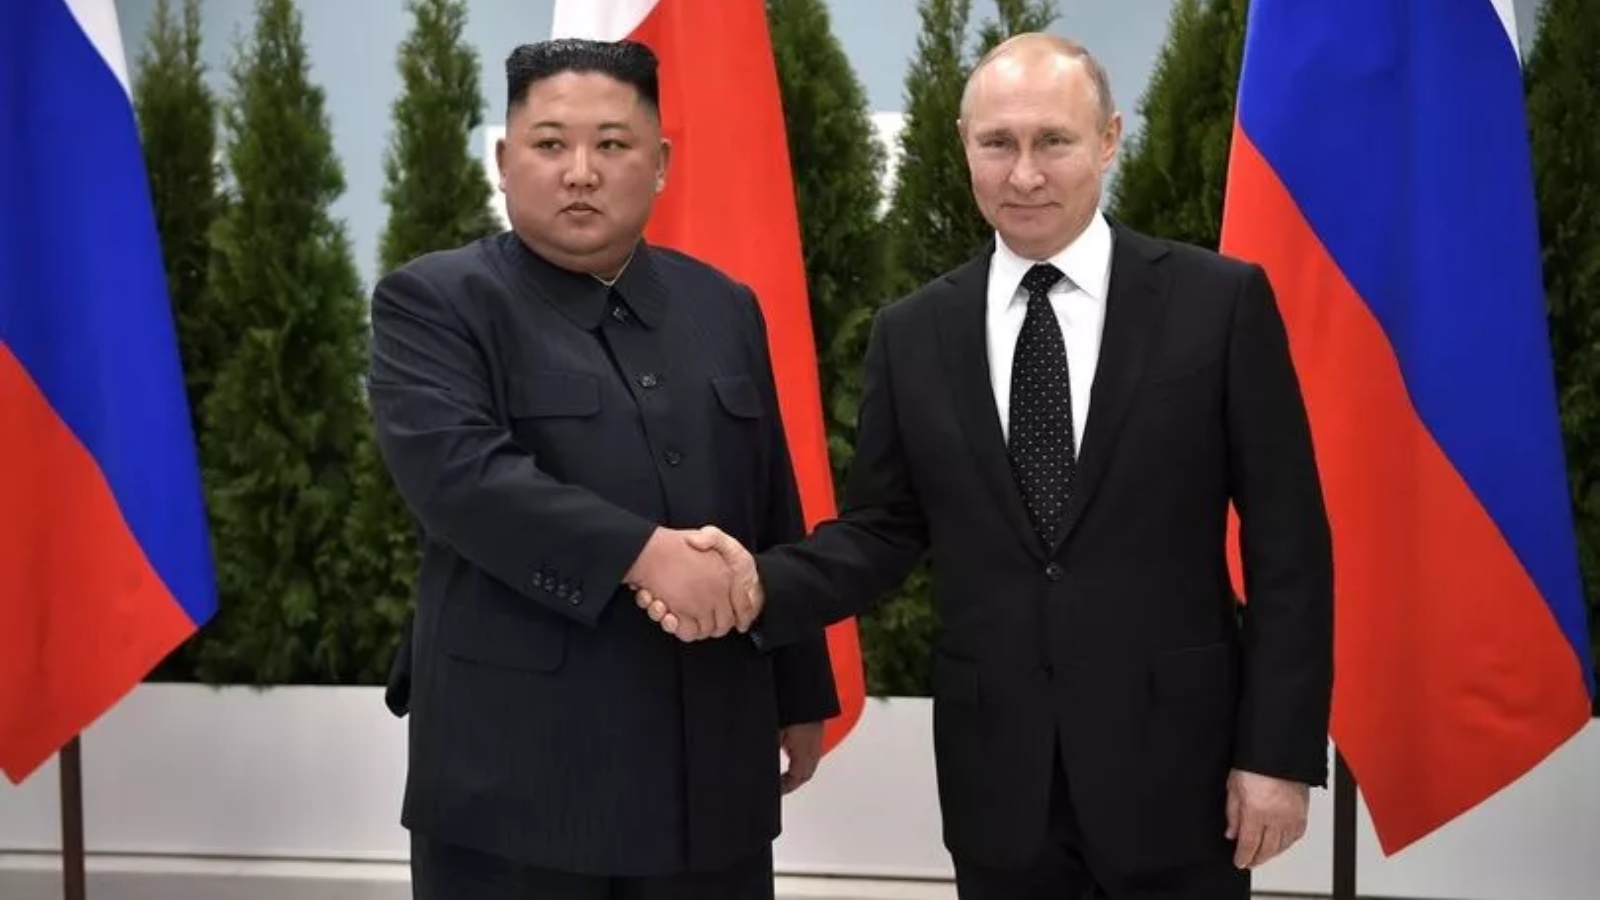 الرئيس الروسي فلاديمير بوتين يستقبل الزعيم الكوري الشمالي كيم جونغ أون في فلاديفوستوك في عام 2019